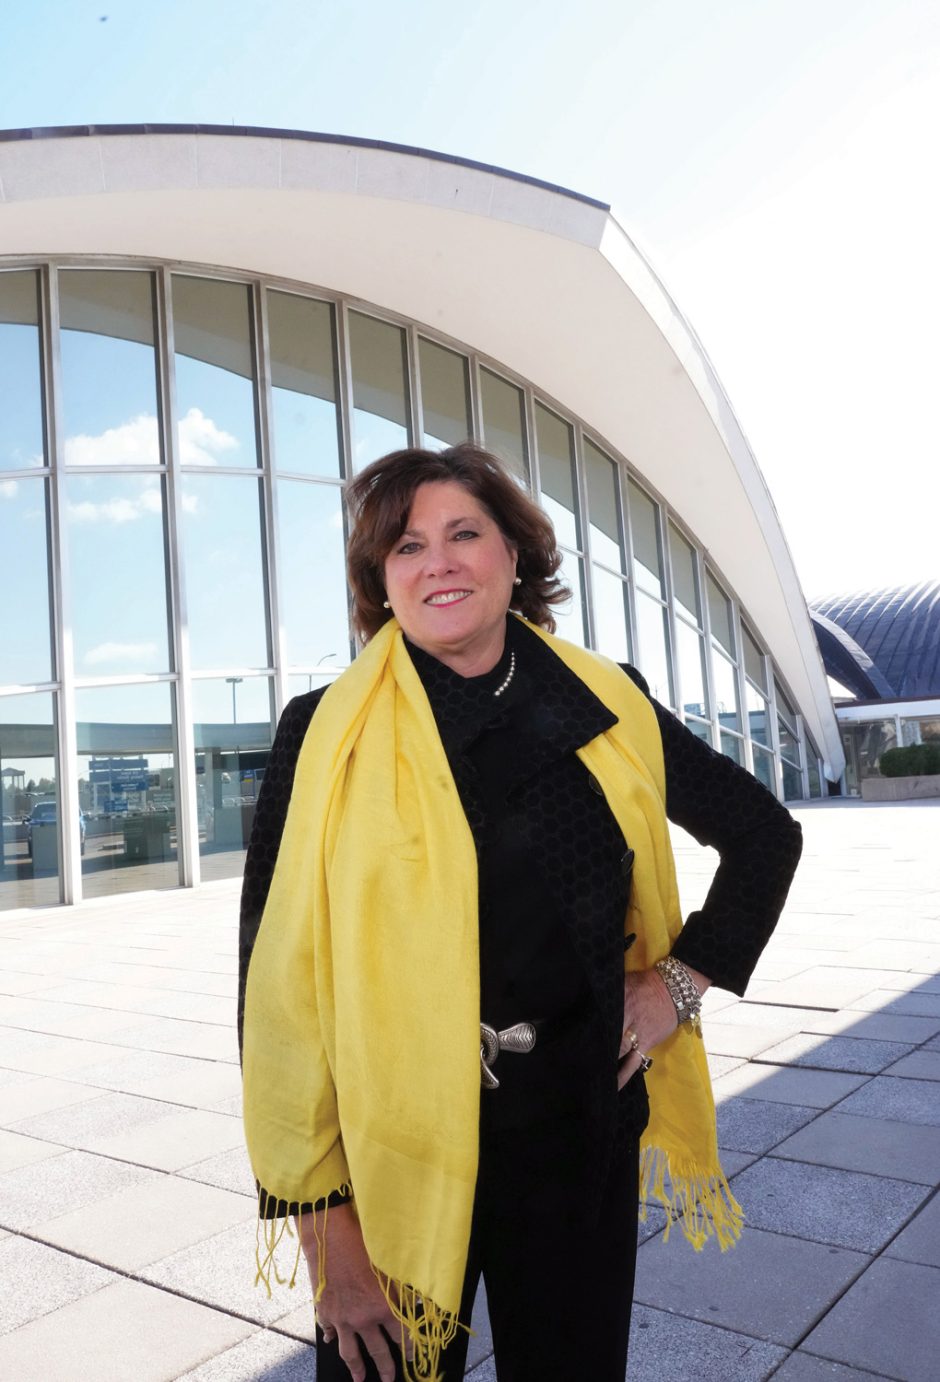 Rhonda Hamm-Niebrugge standing at St. Louis airport